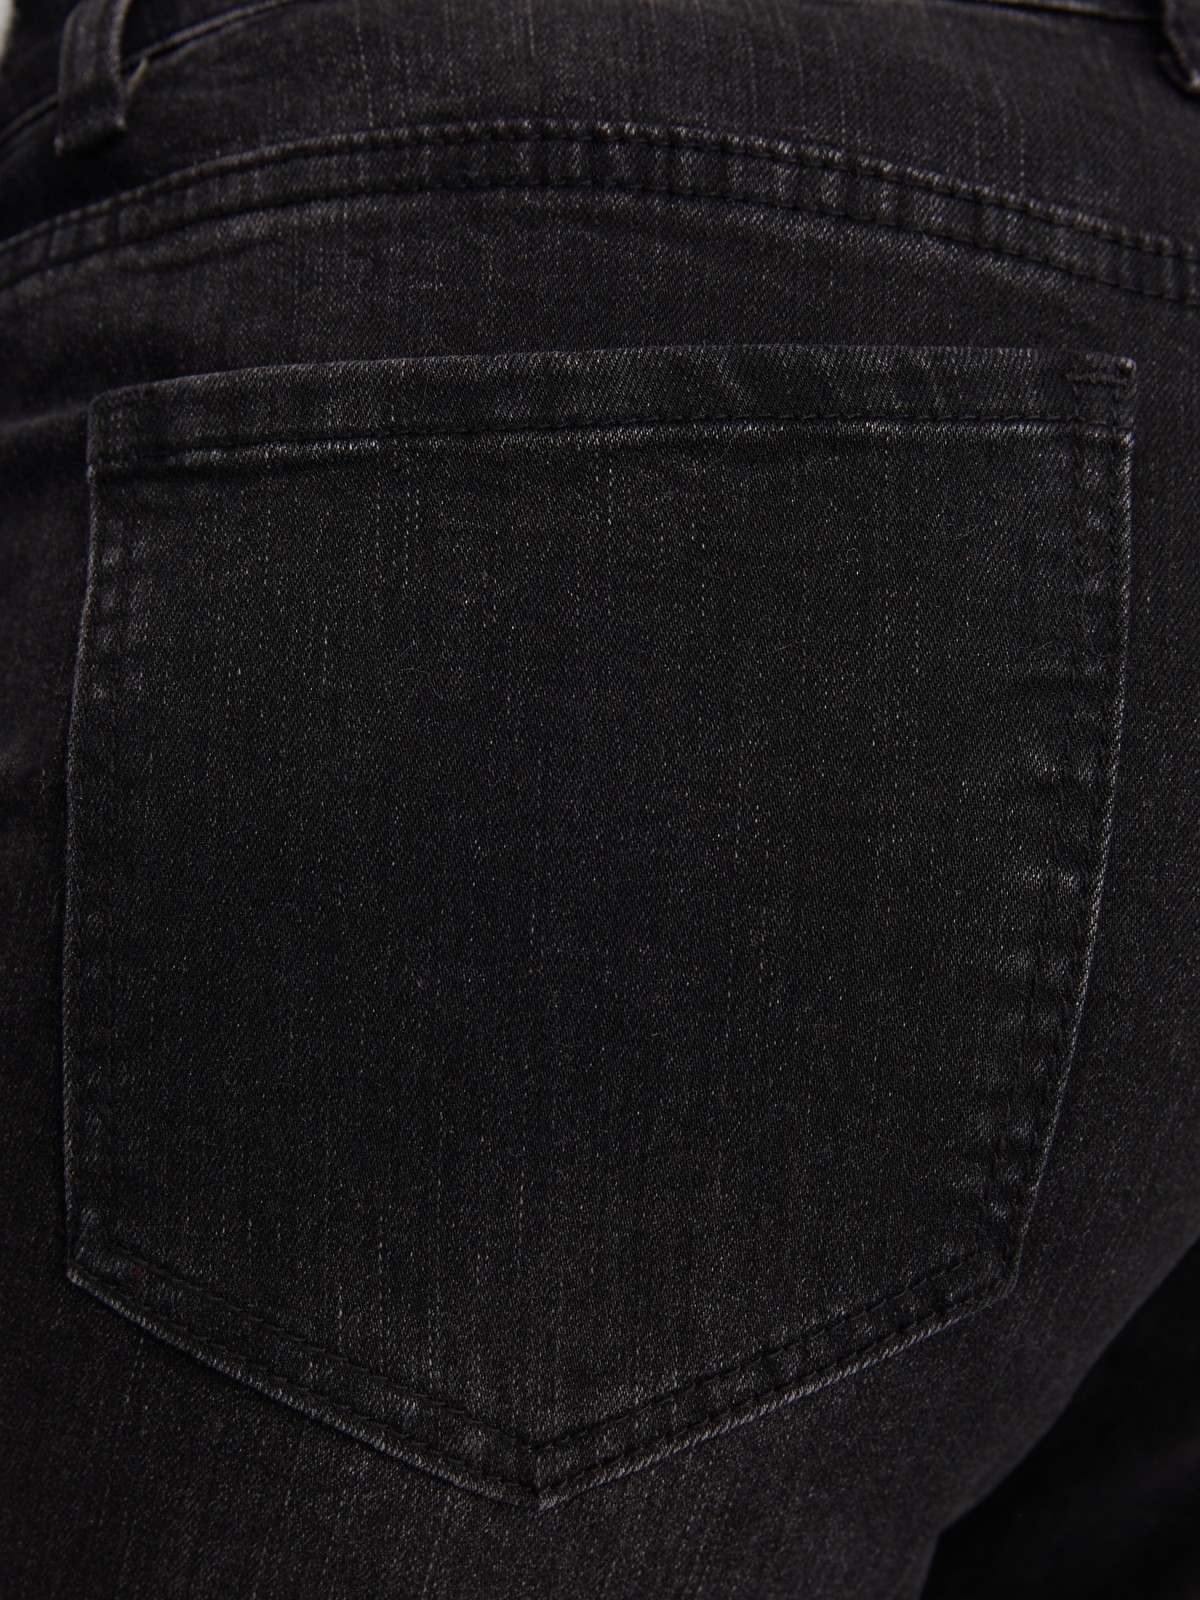 Джинсы силуэта Skinny с низкой посадкой zolla 023337117133, цвет темно-серый, размер 34 - фото 6